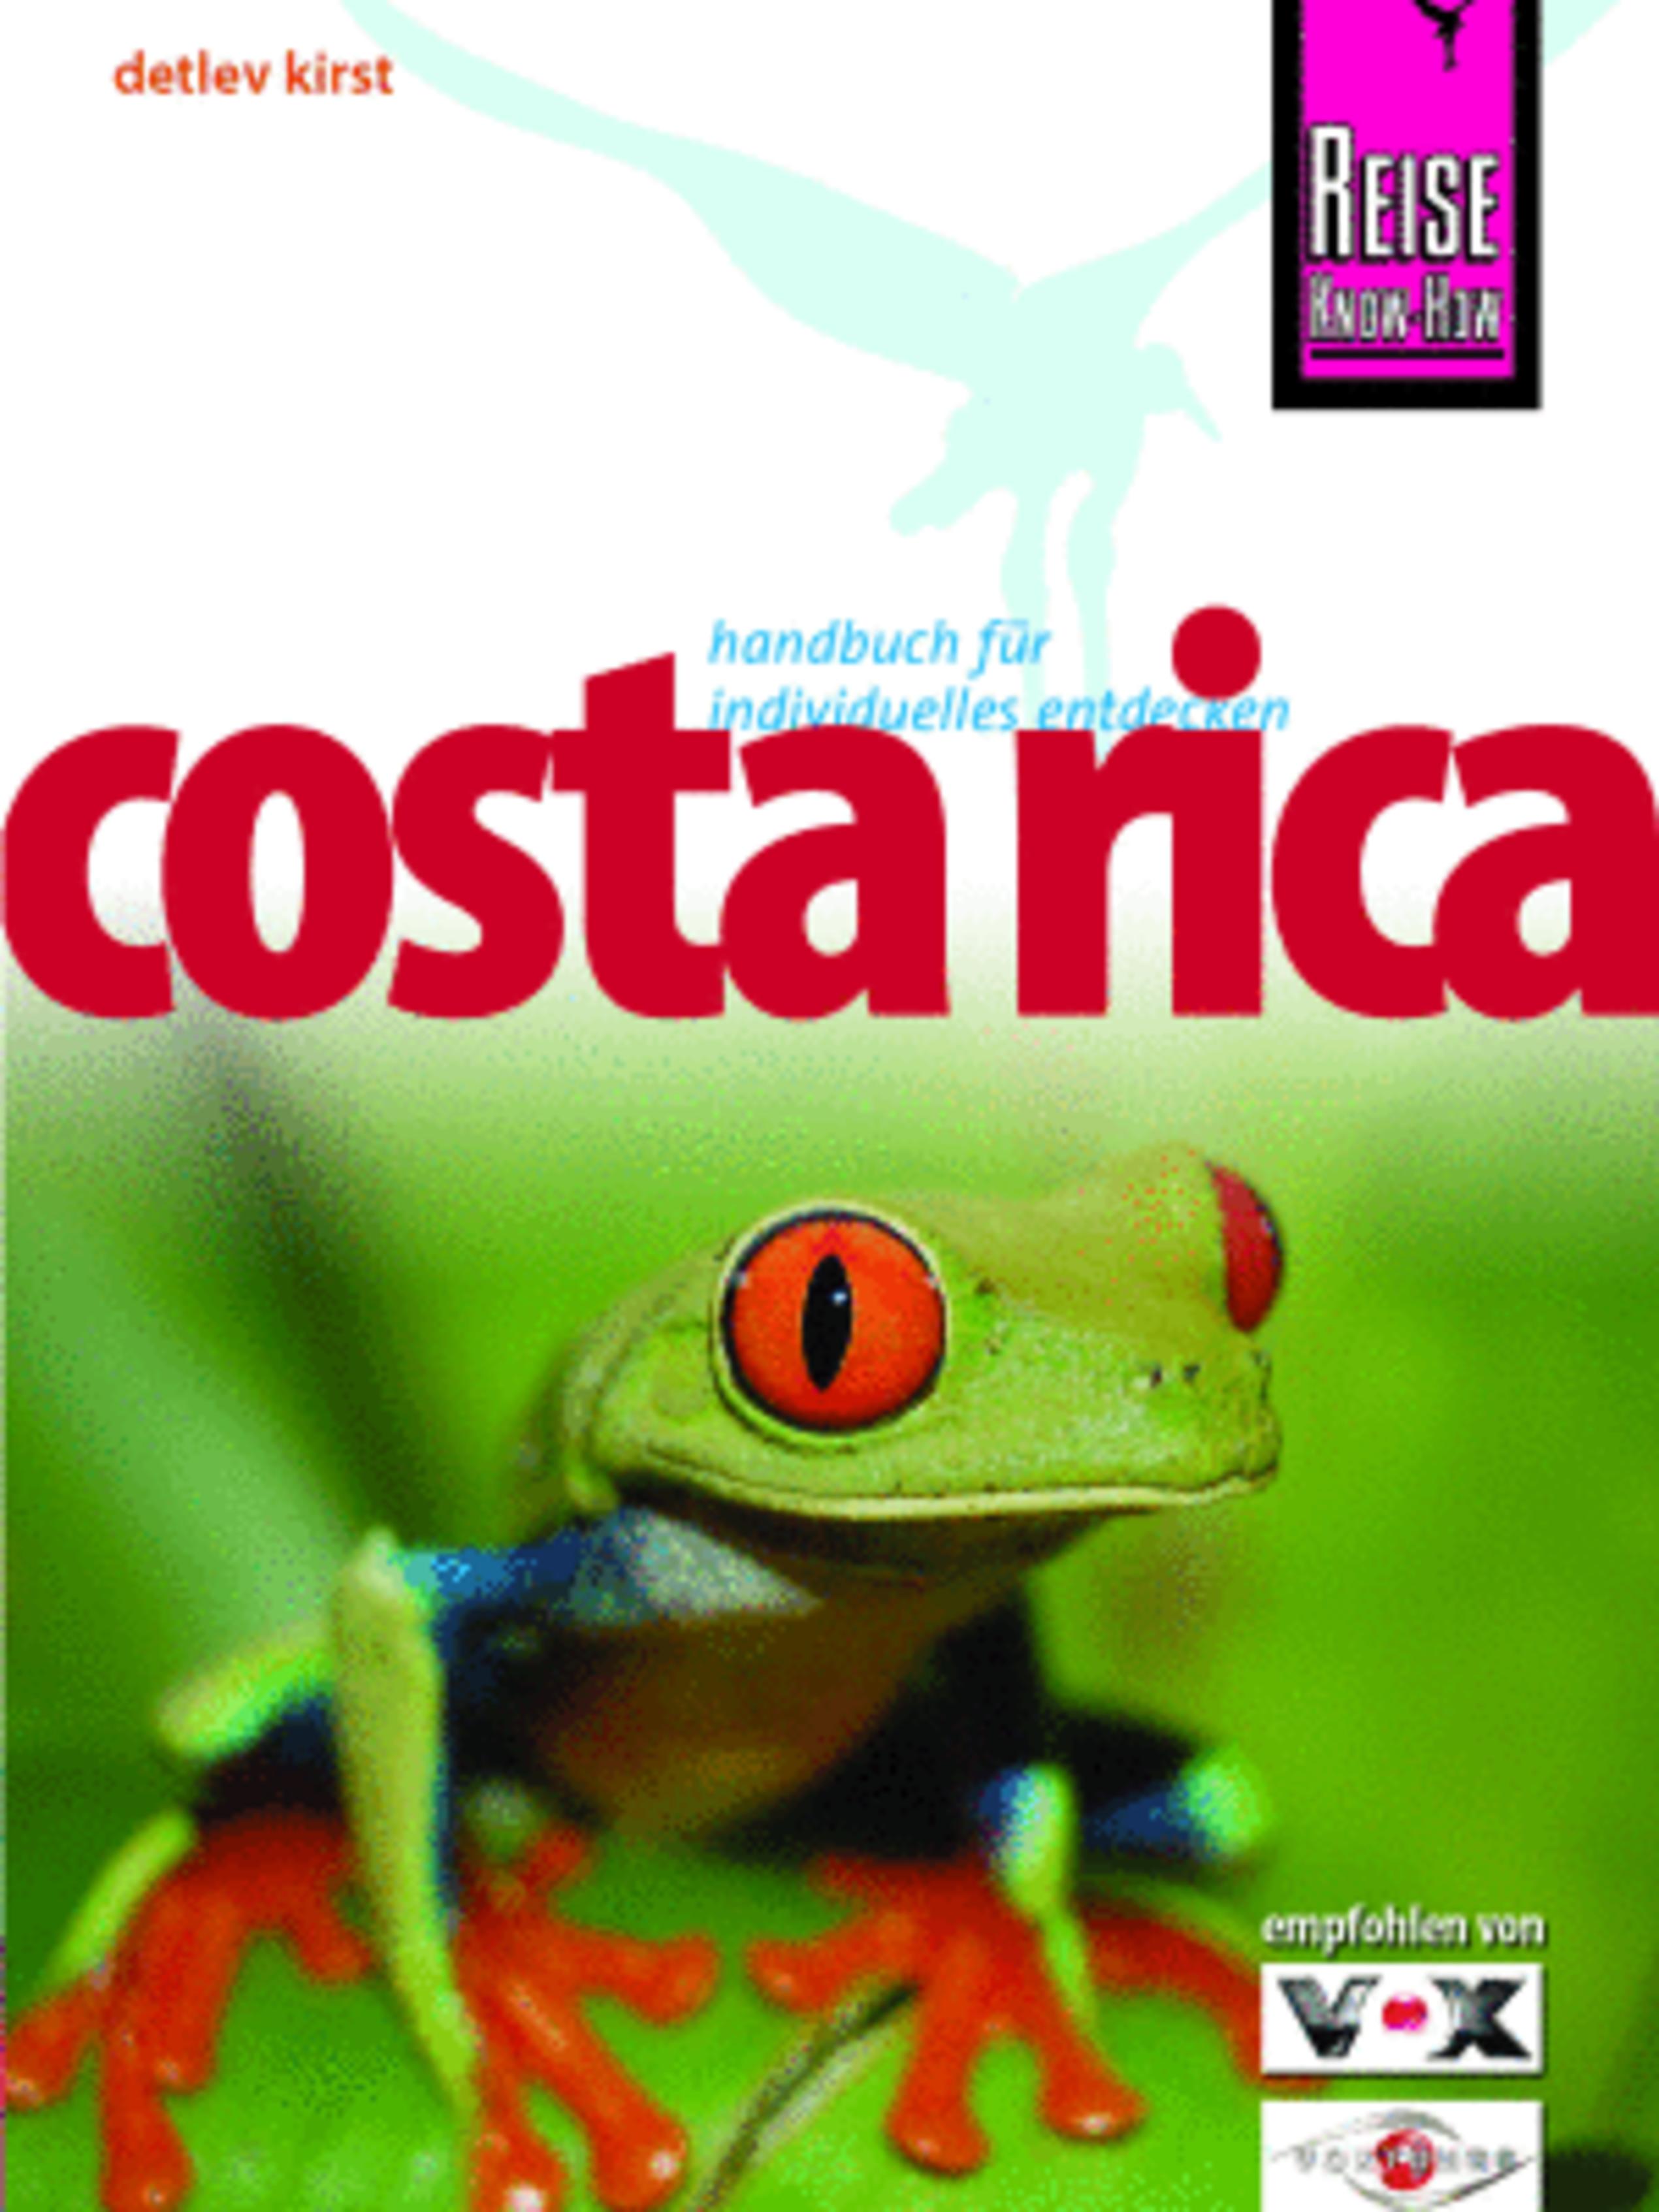 Costa Rica ist das pralle Leben!